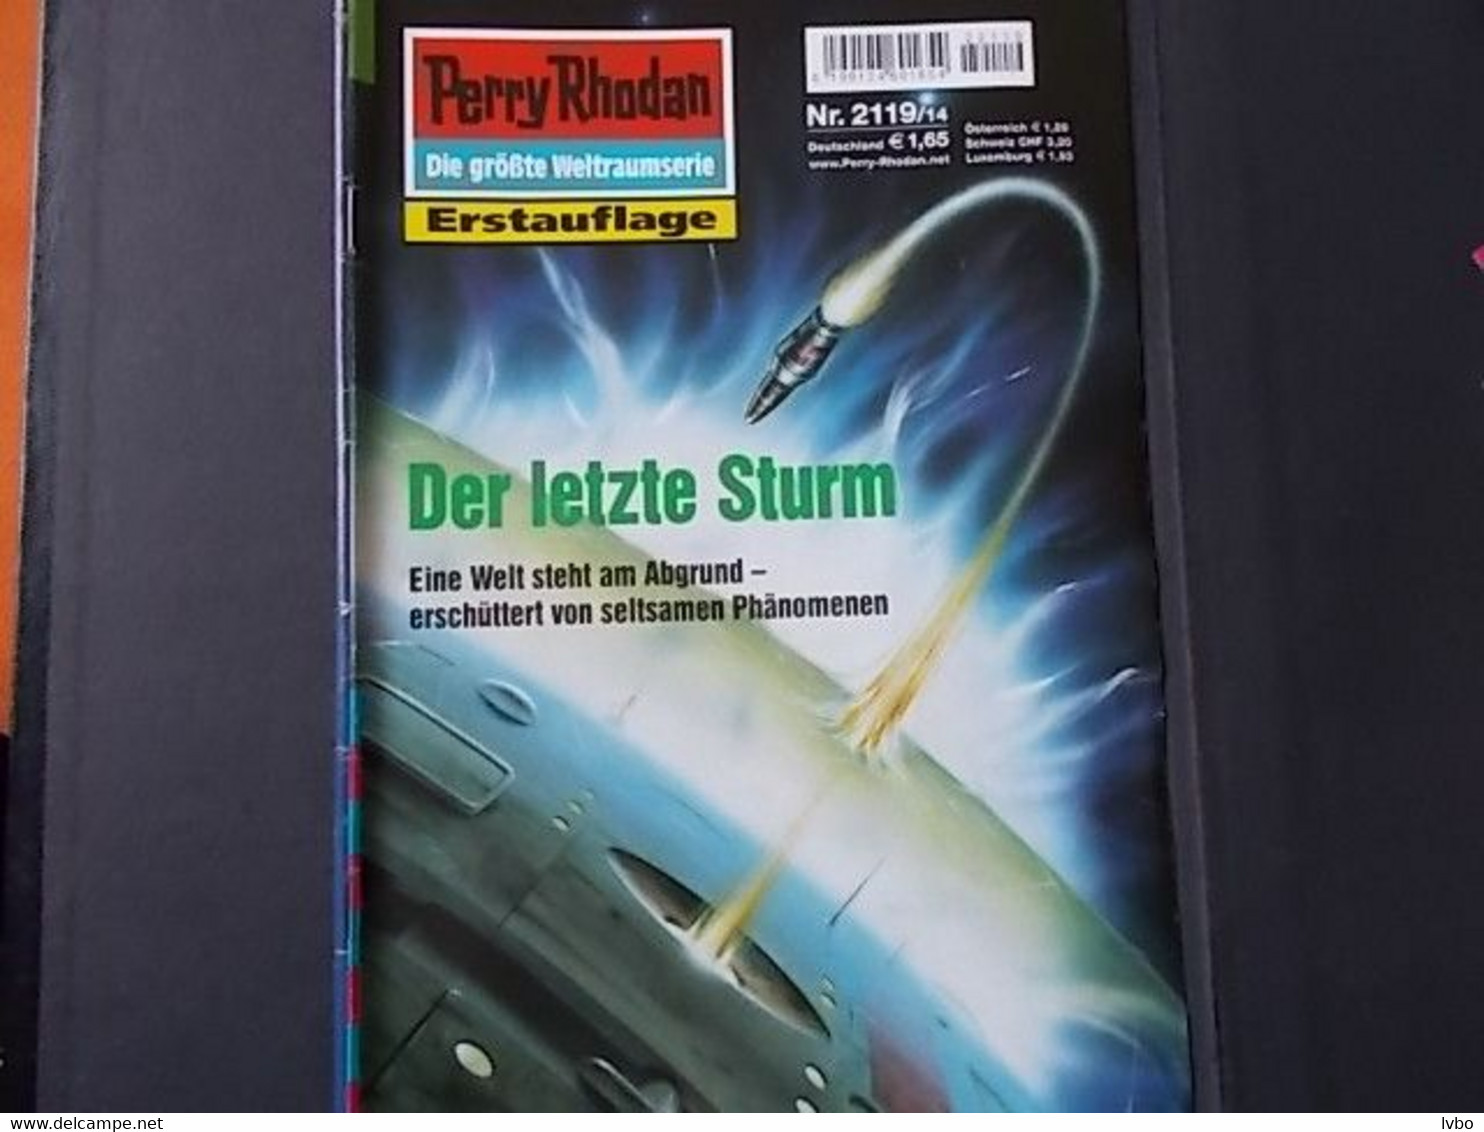 Perry Rhodan Nr 2119 Erstauflage Der Letzte Sturm - Sci-Fi